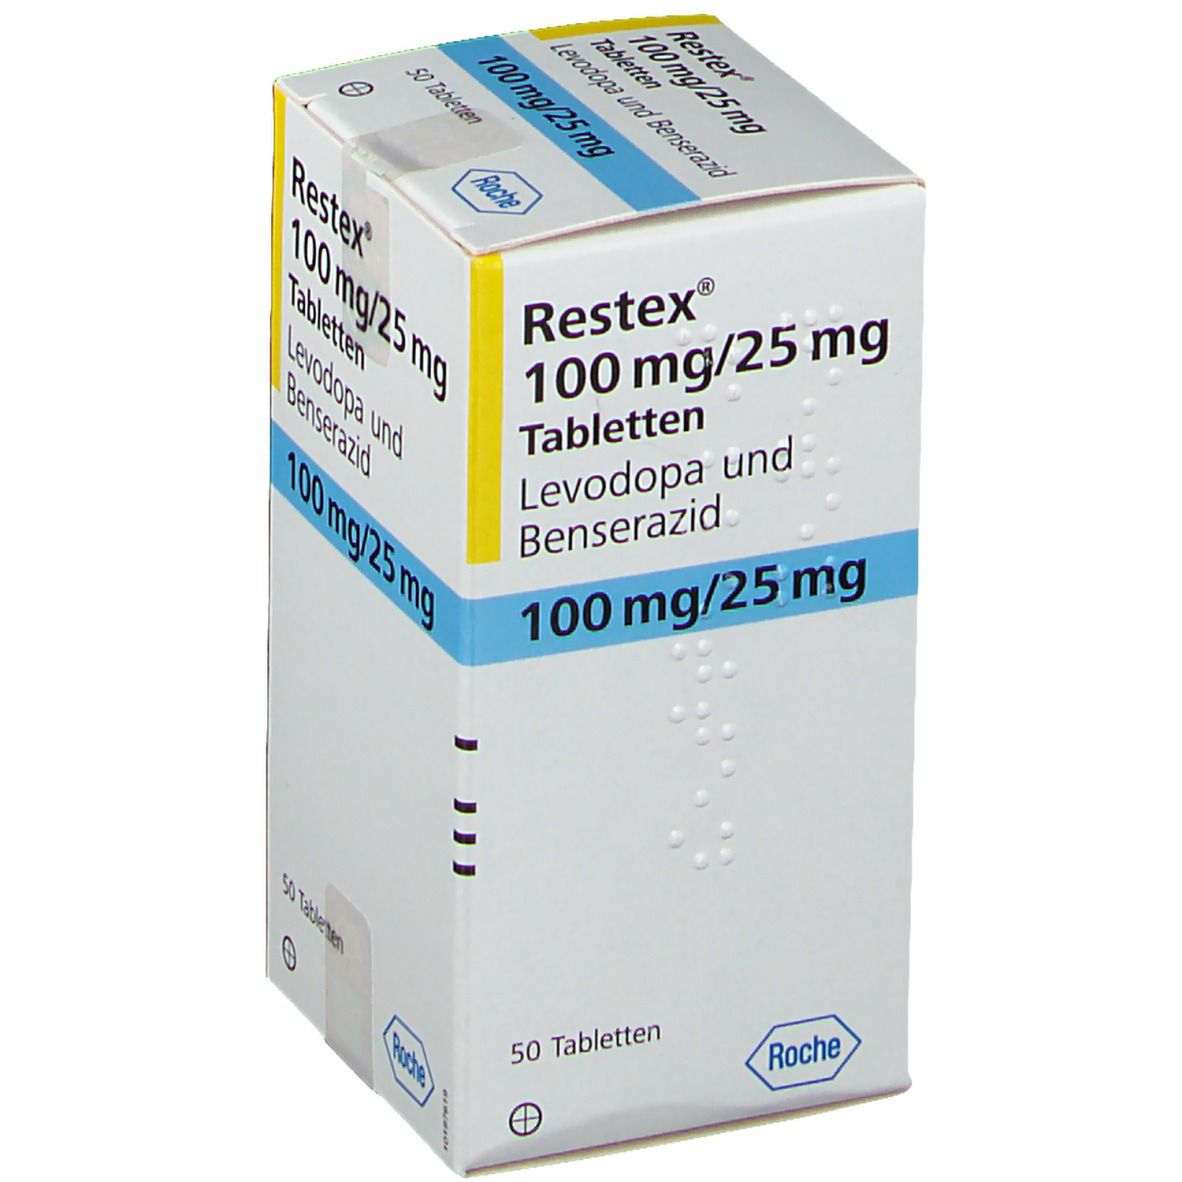 Restex® 100 mg/25 mg 20 St - shop-apotheke.com